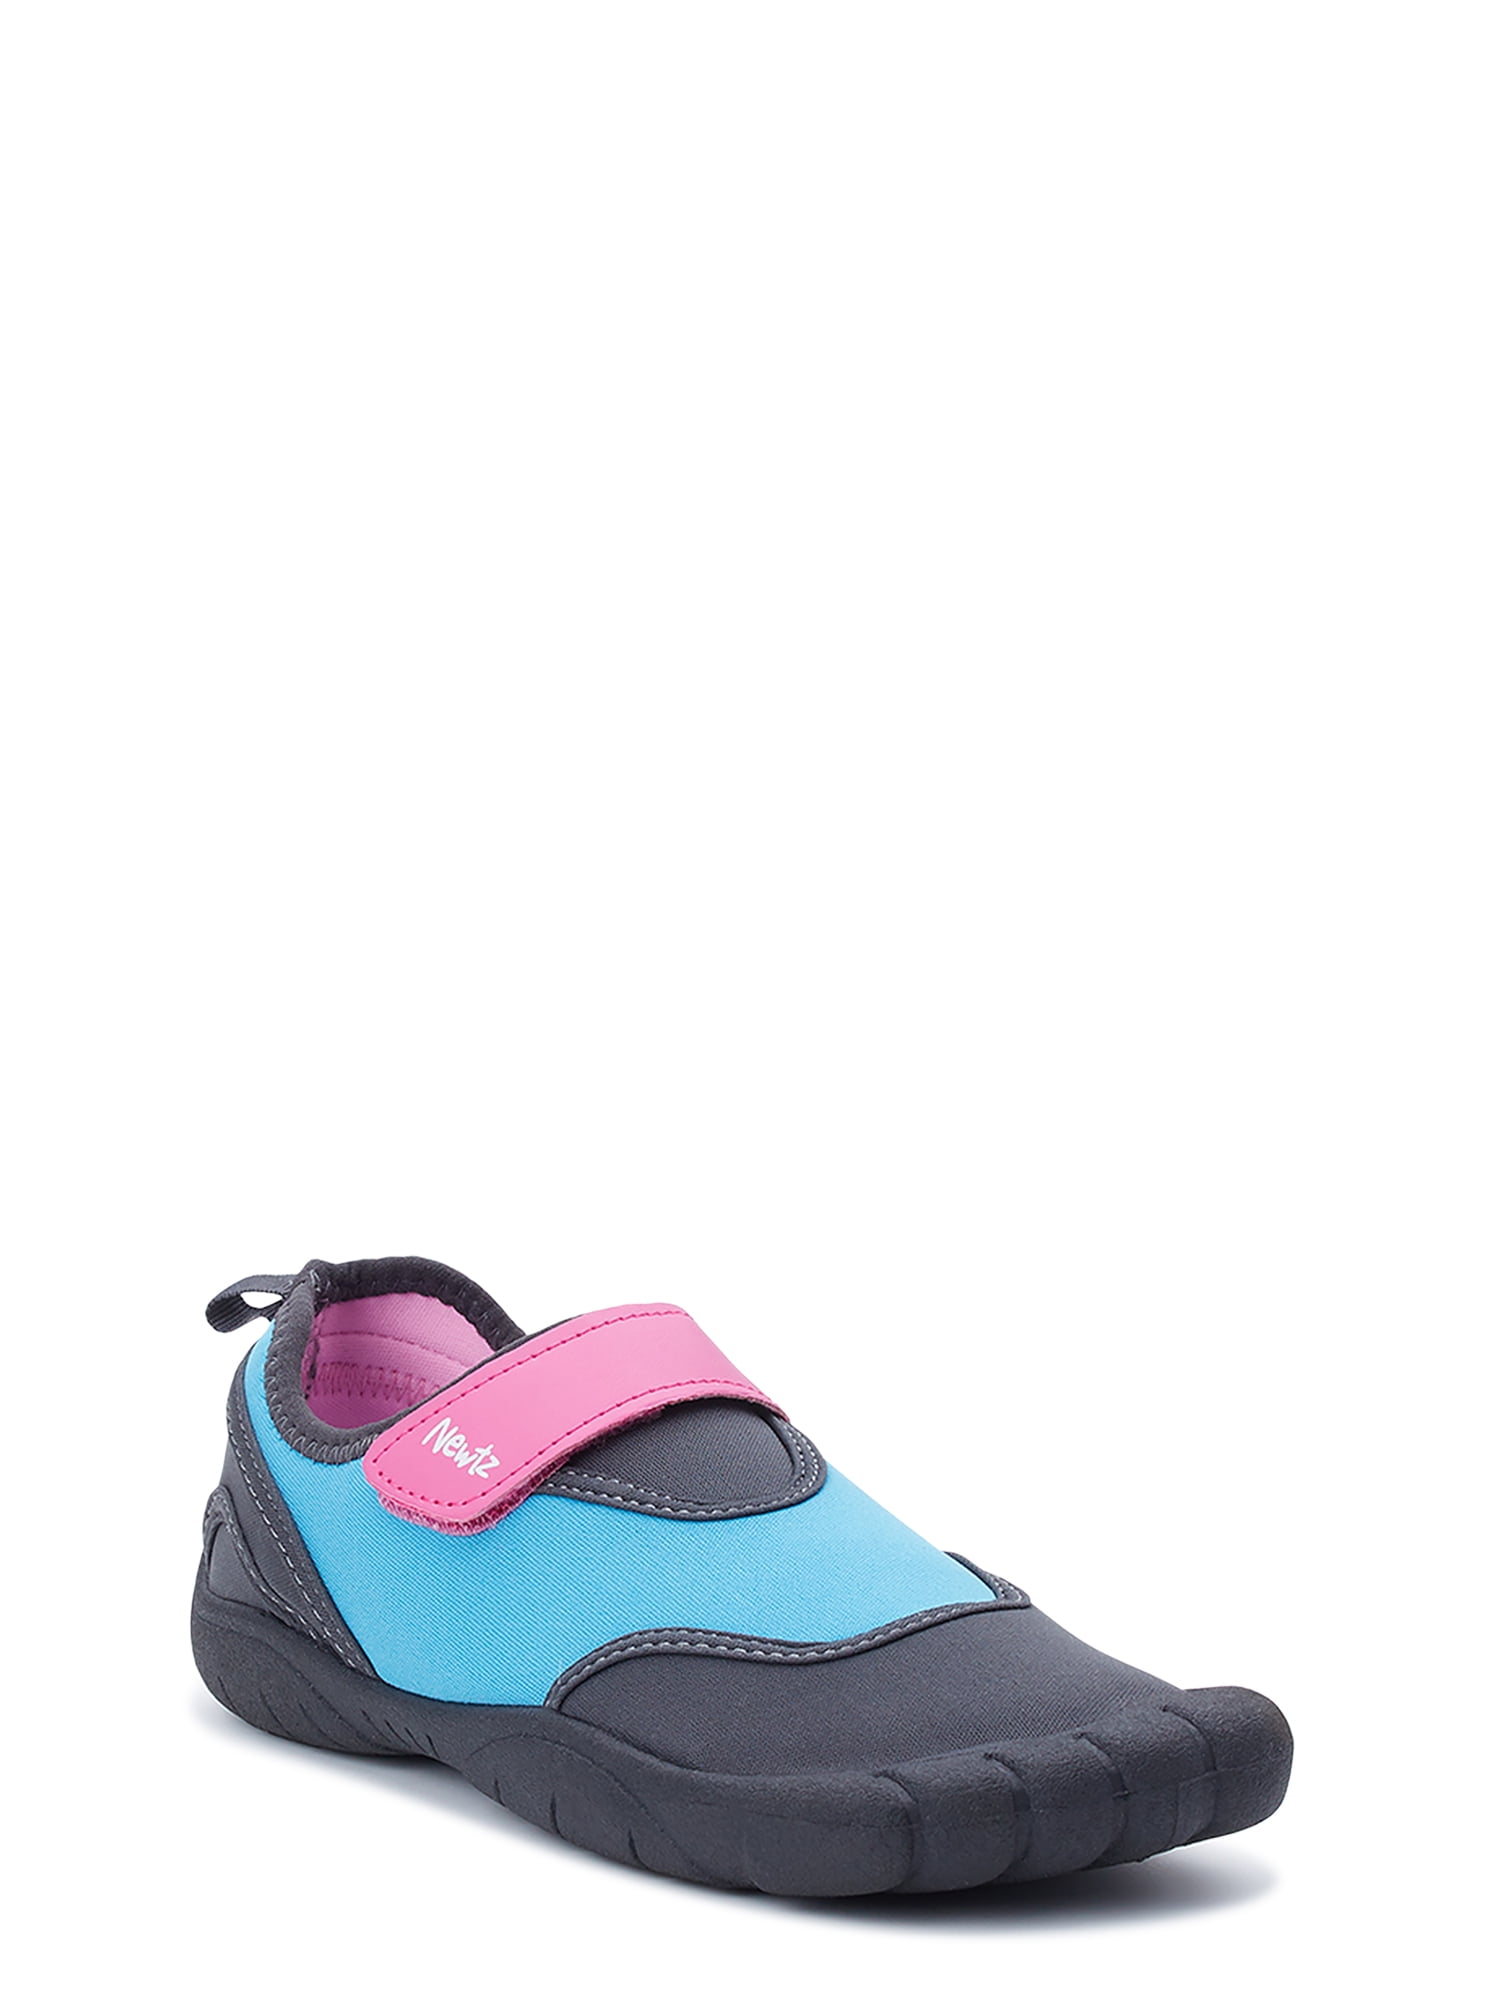 Newtz Women's Water Shoes - Walmart.com